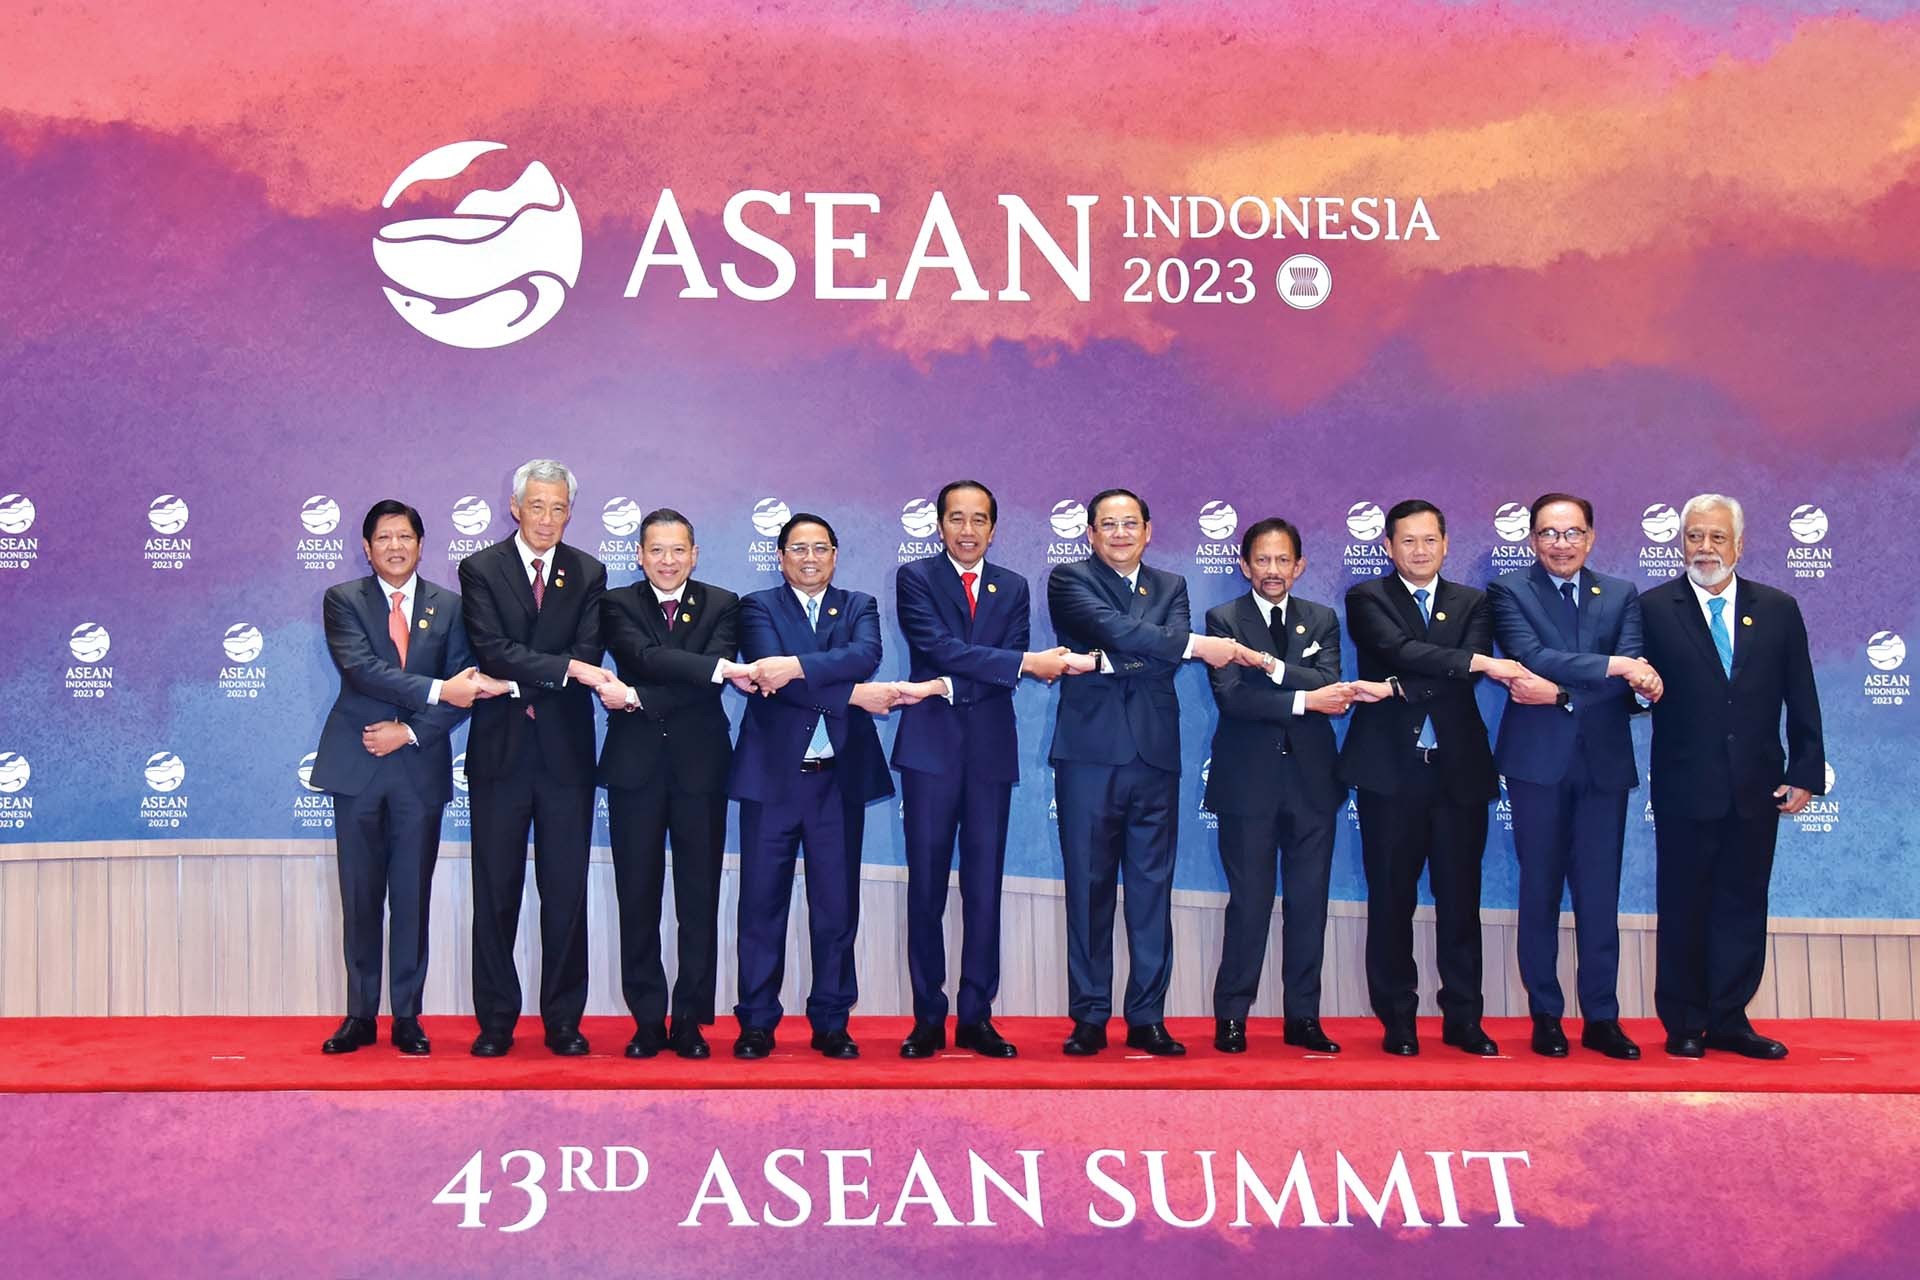 Đưa con thuyền ASEAN vươn xa